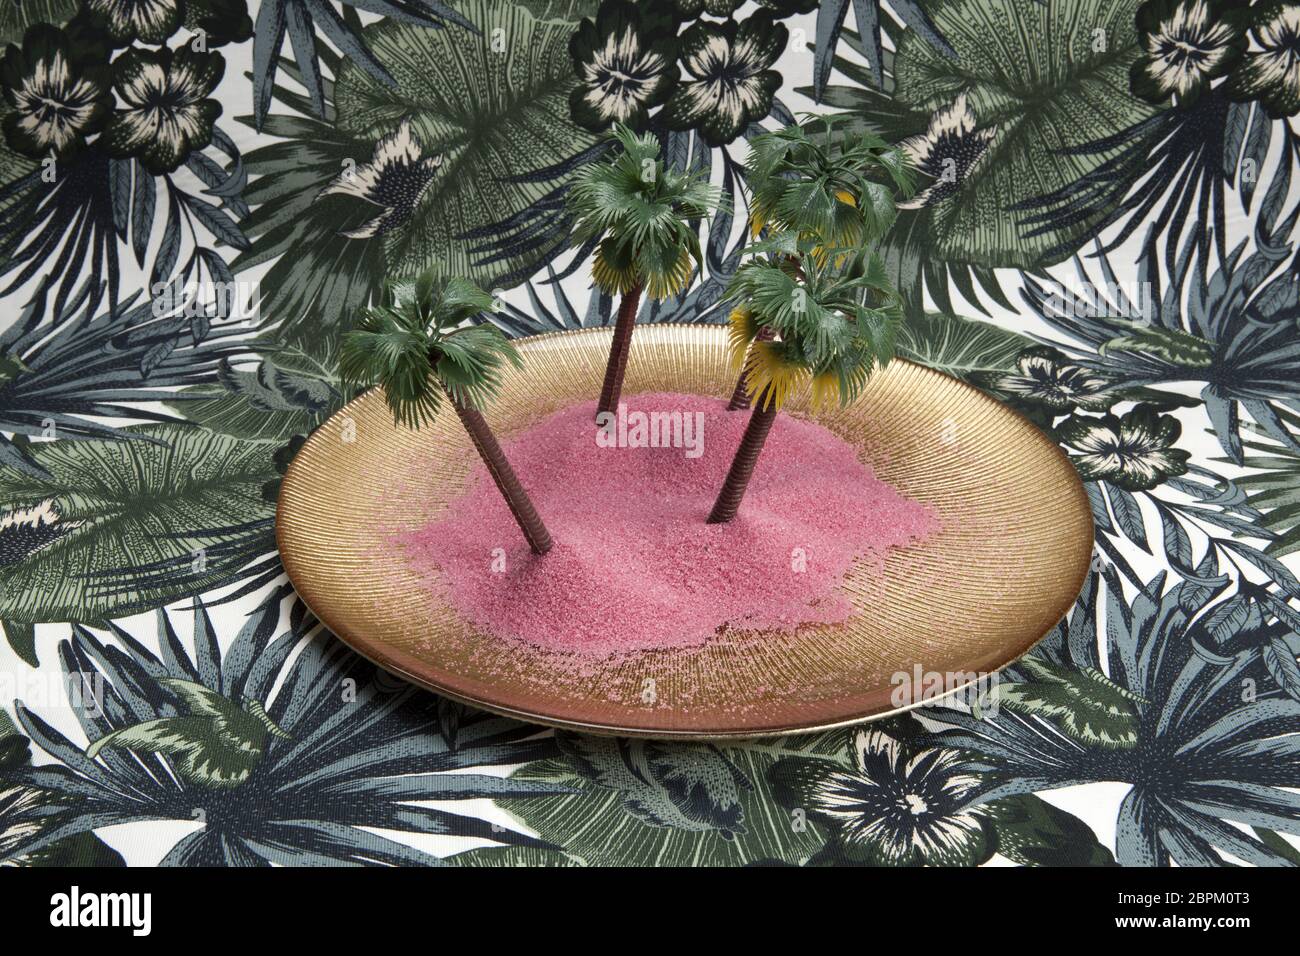 Sabbia rosa e le palme in un piatto dorato su uno sfondo tropicale. Il minimo di still life fotografia a colori., Foto Stock